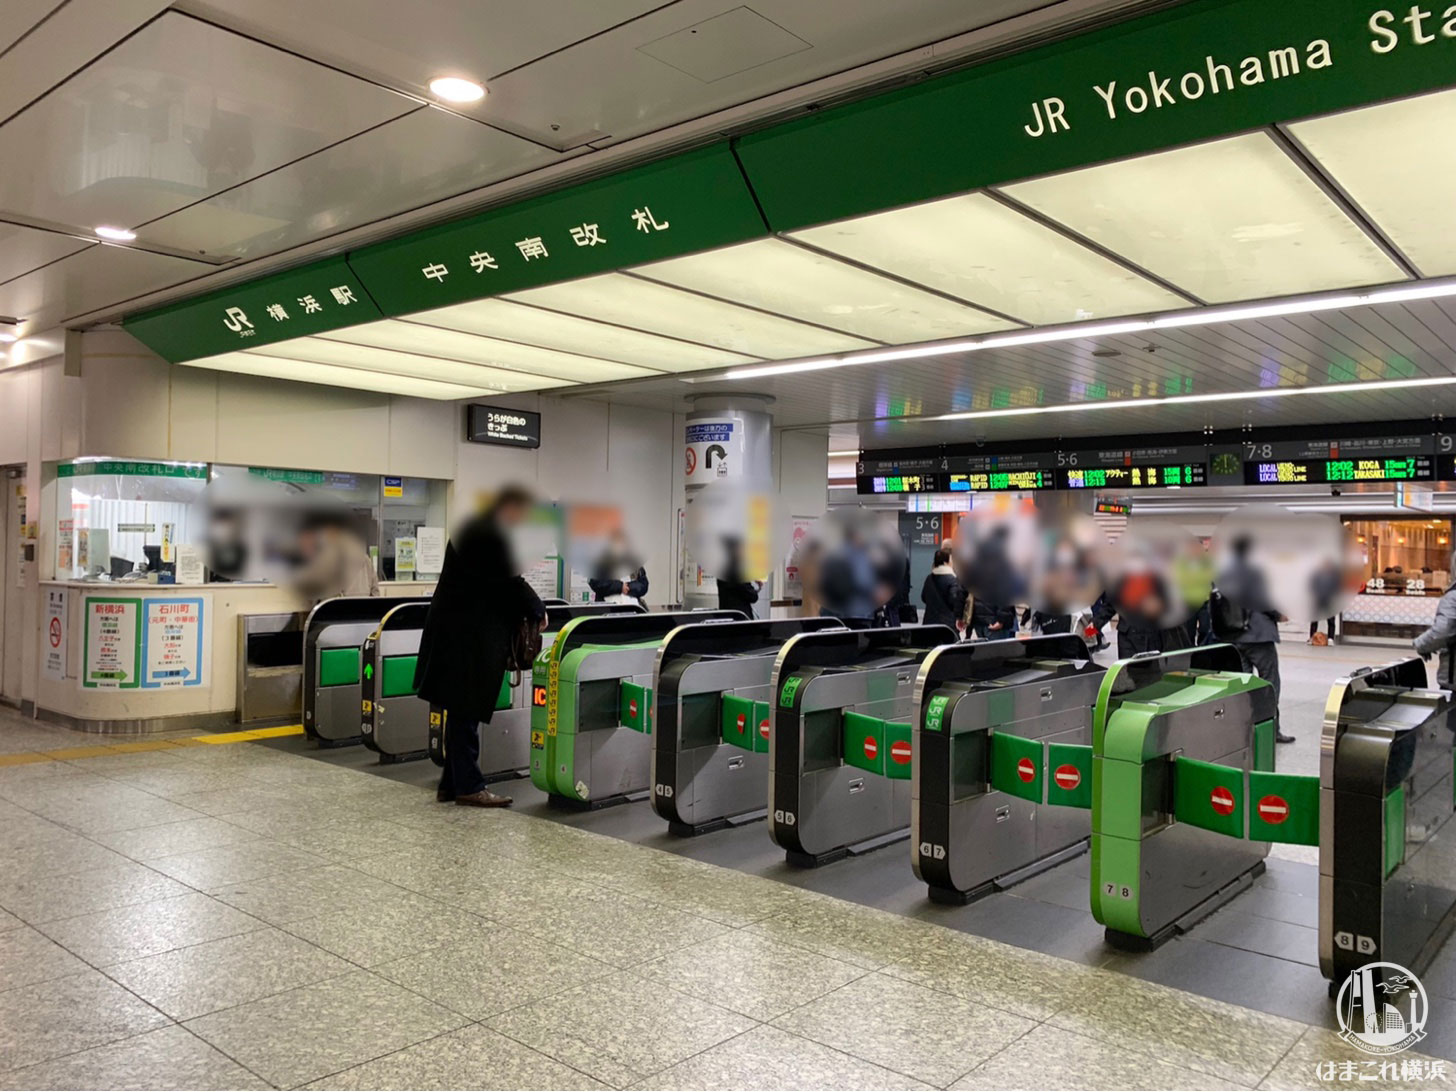 横浜駅 JR改札内に新通路整備！中央南改札と南改札のコンコース繋ぎ、待合広場も